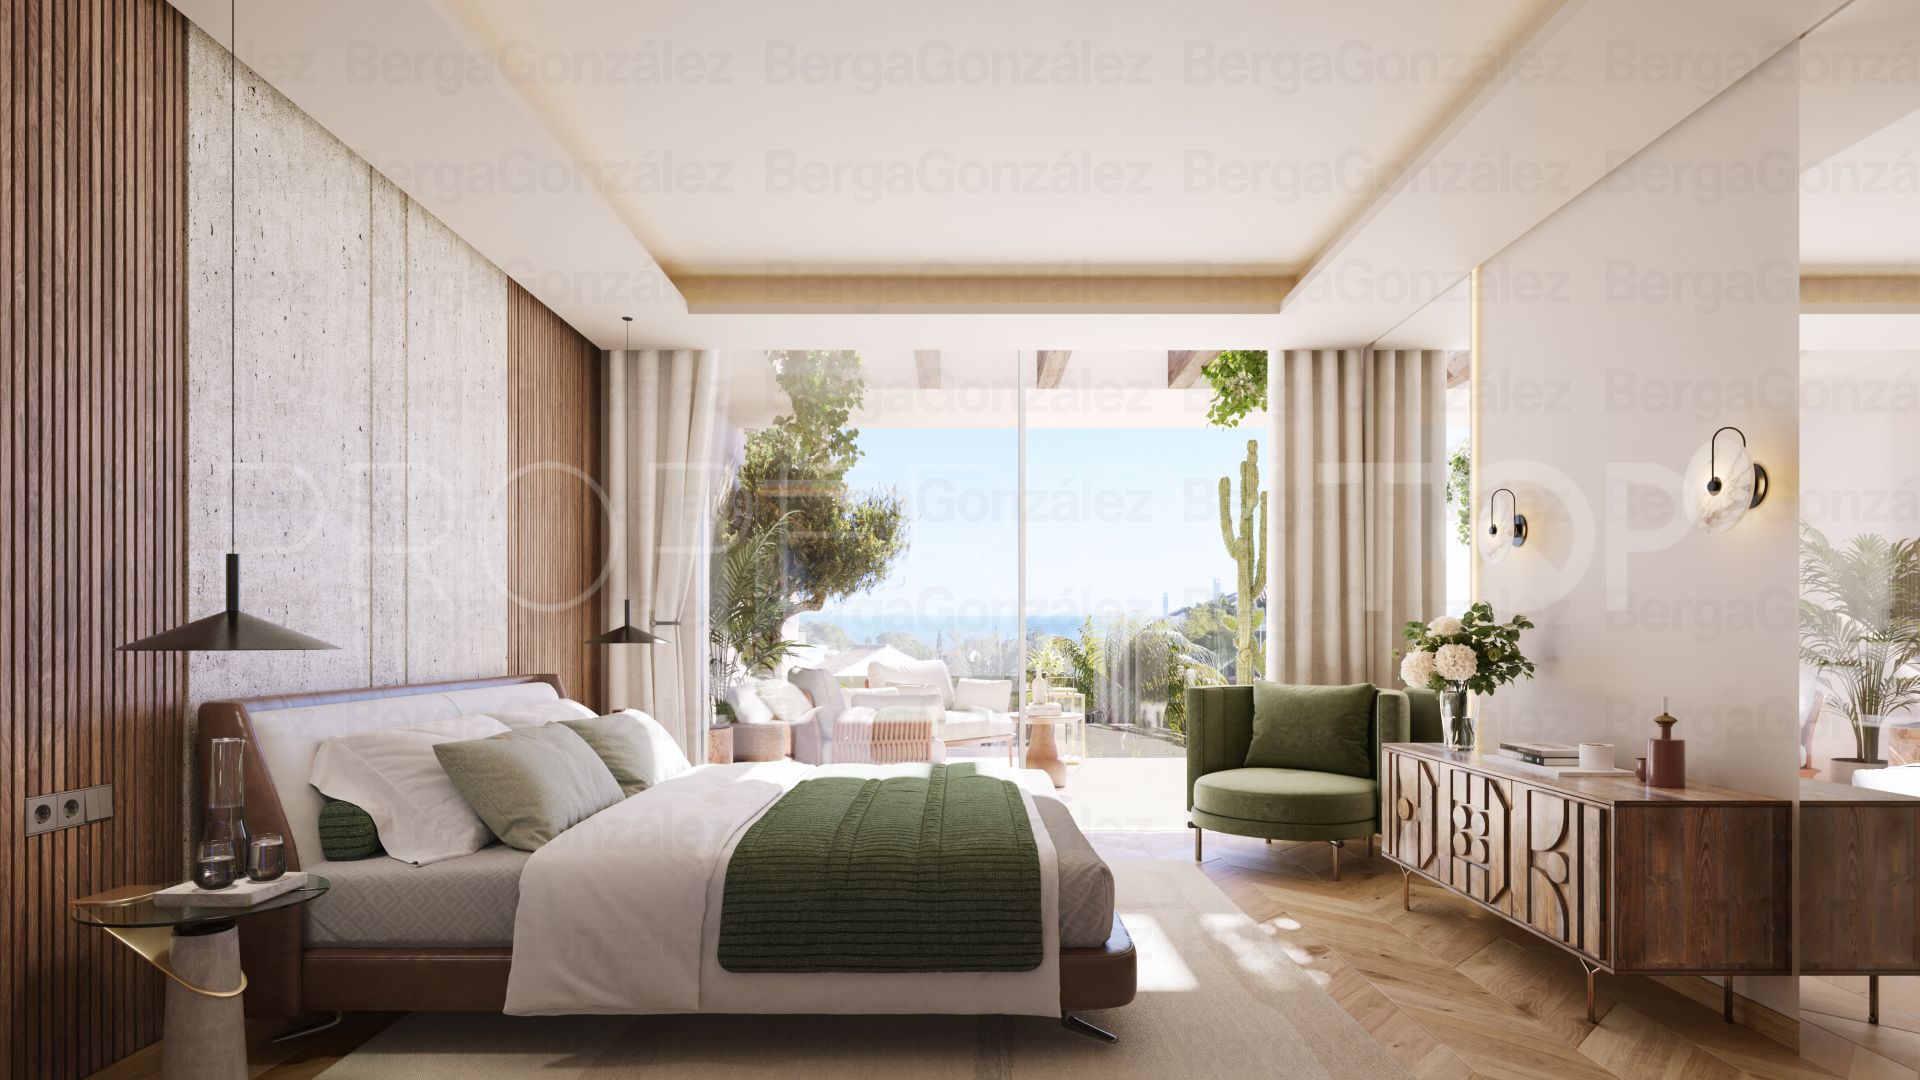 Buy Señorio de Marbella 4 bedrooms duplex penthouse